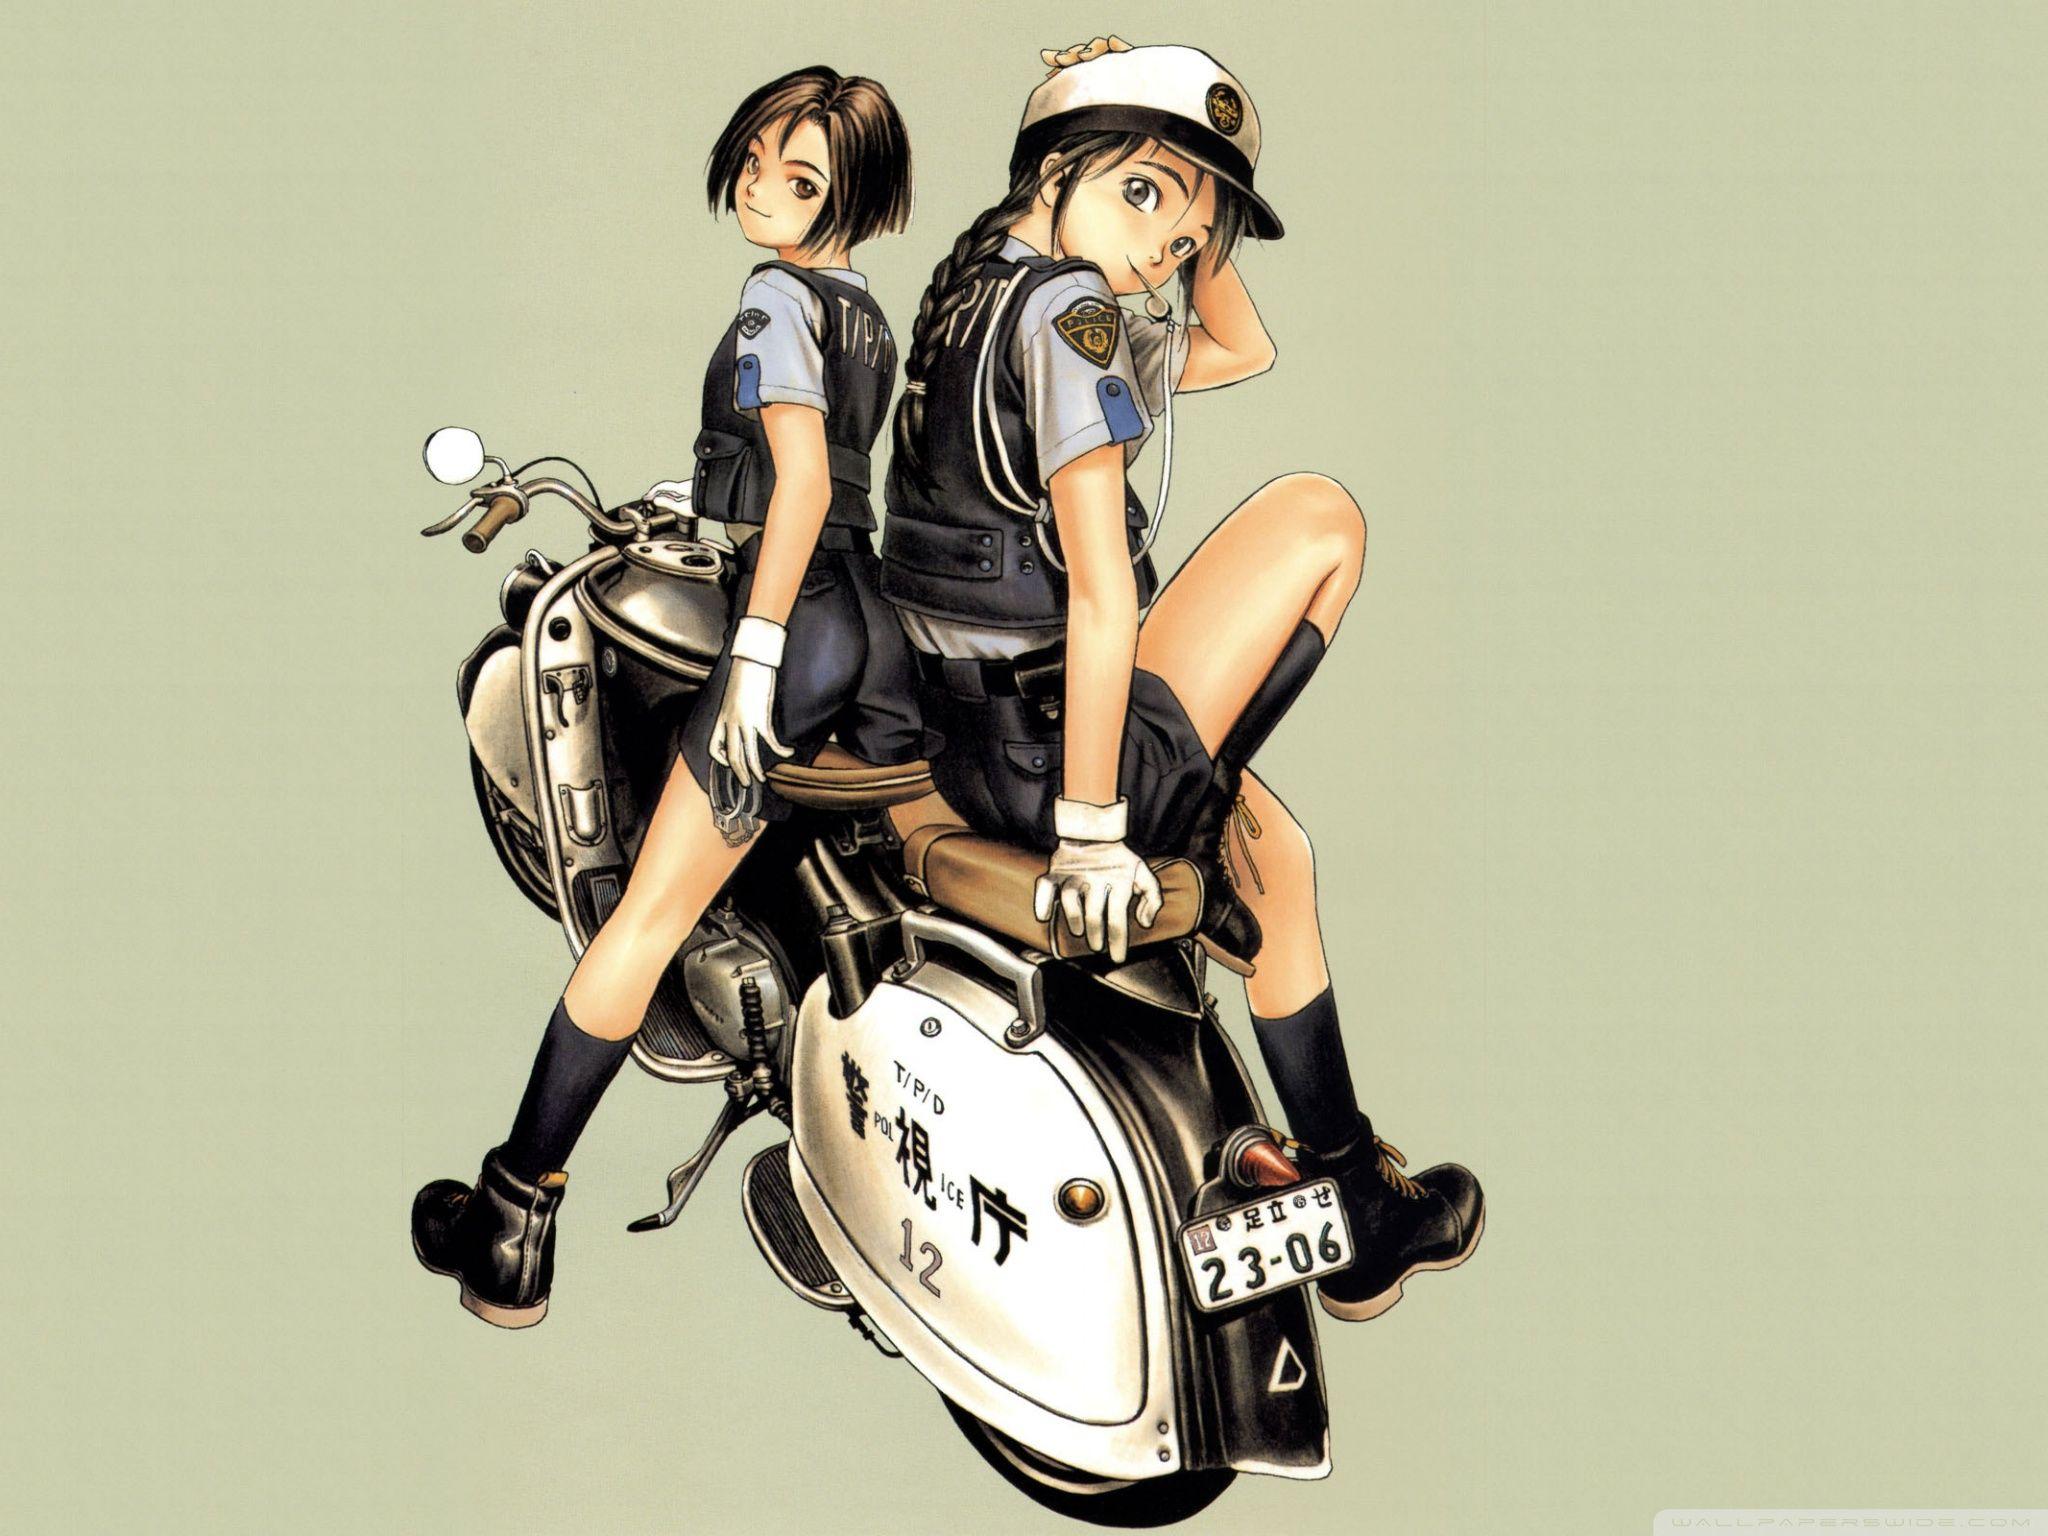 Anime Police Officer HD desktop wallpaper, Fullscreen